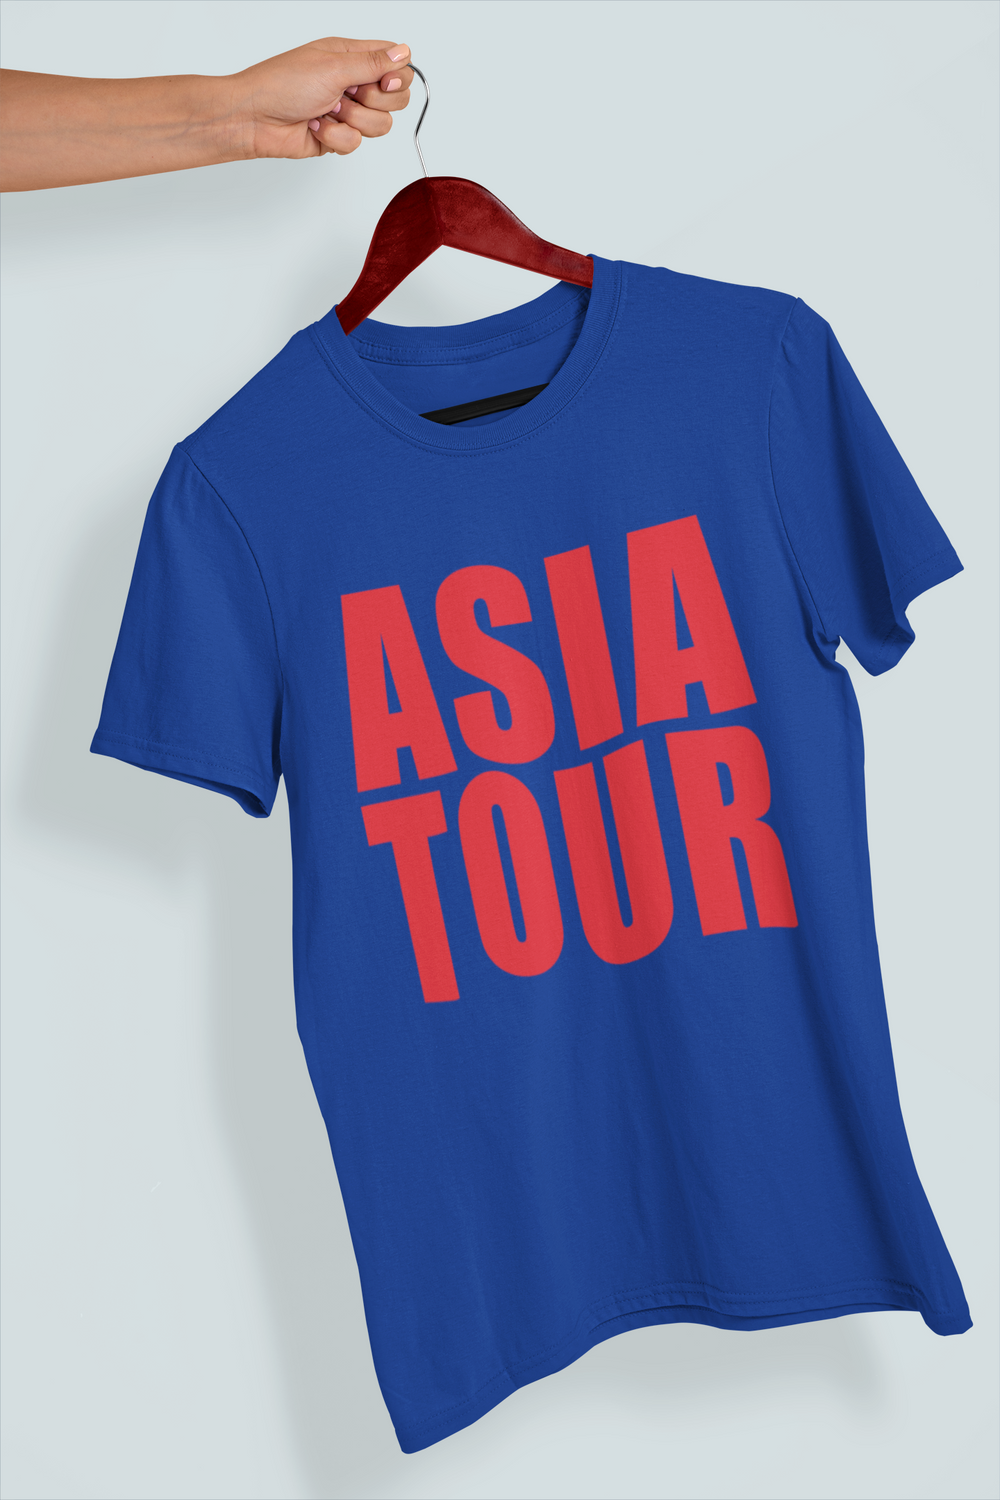 Asia Tour Softstyle Tee - TalkPeng